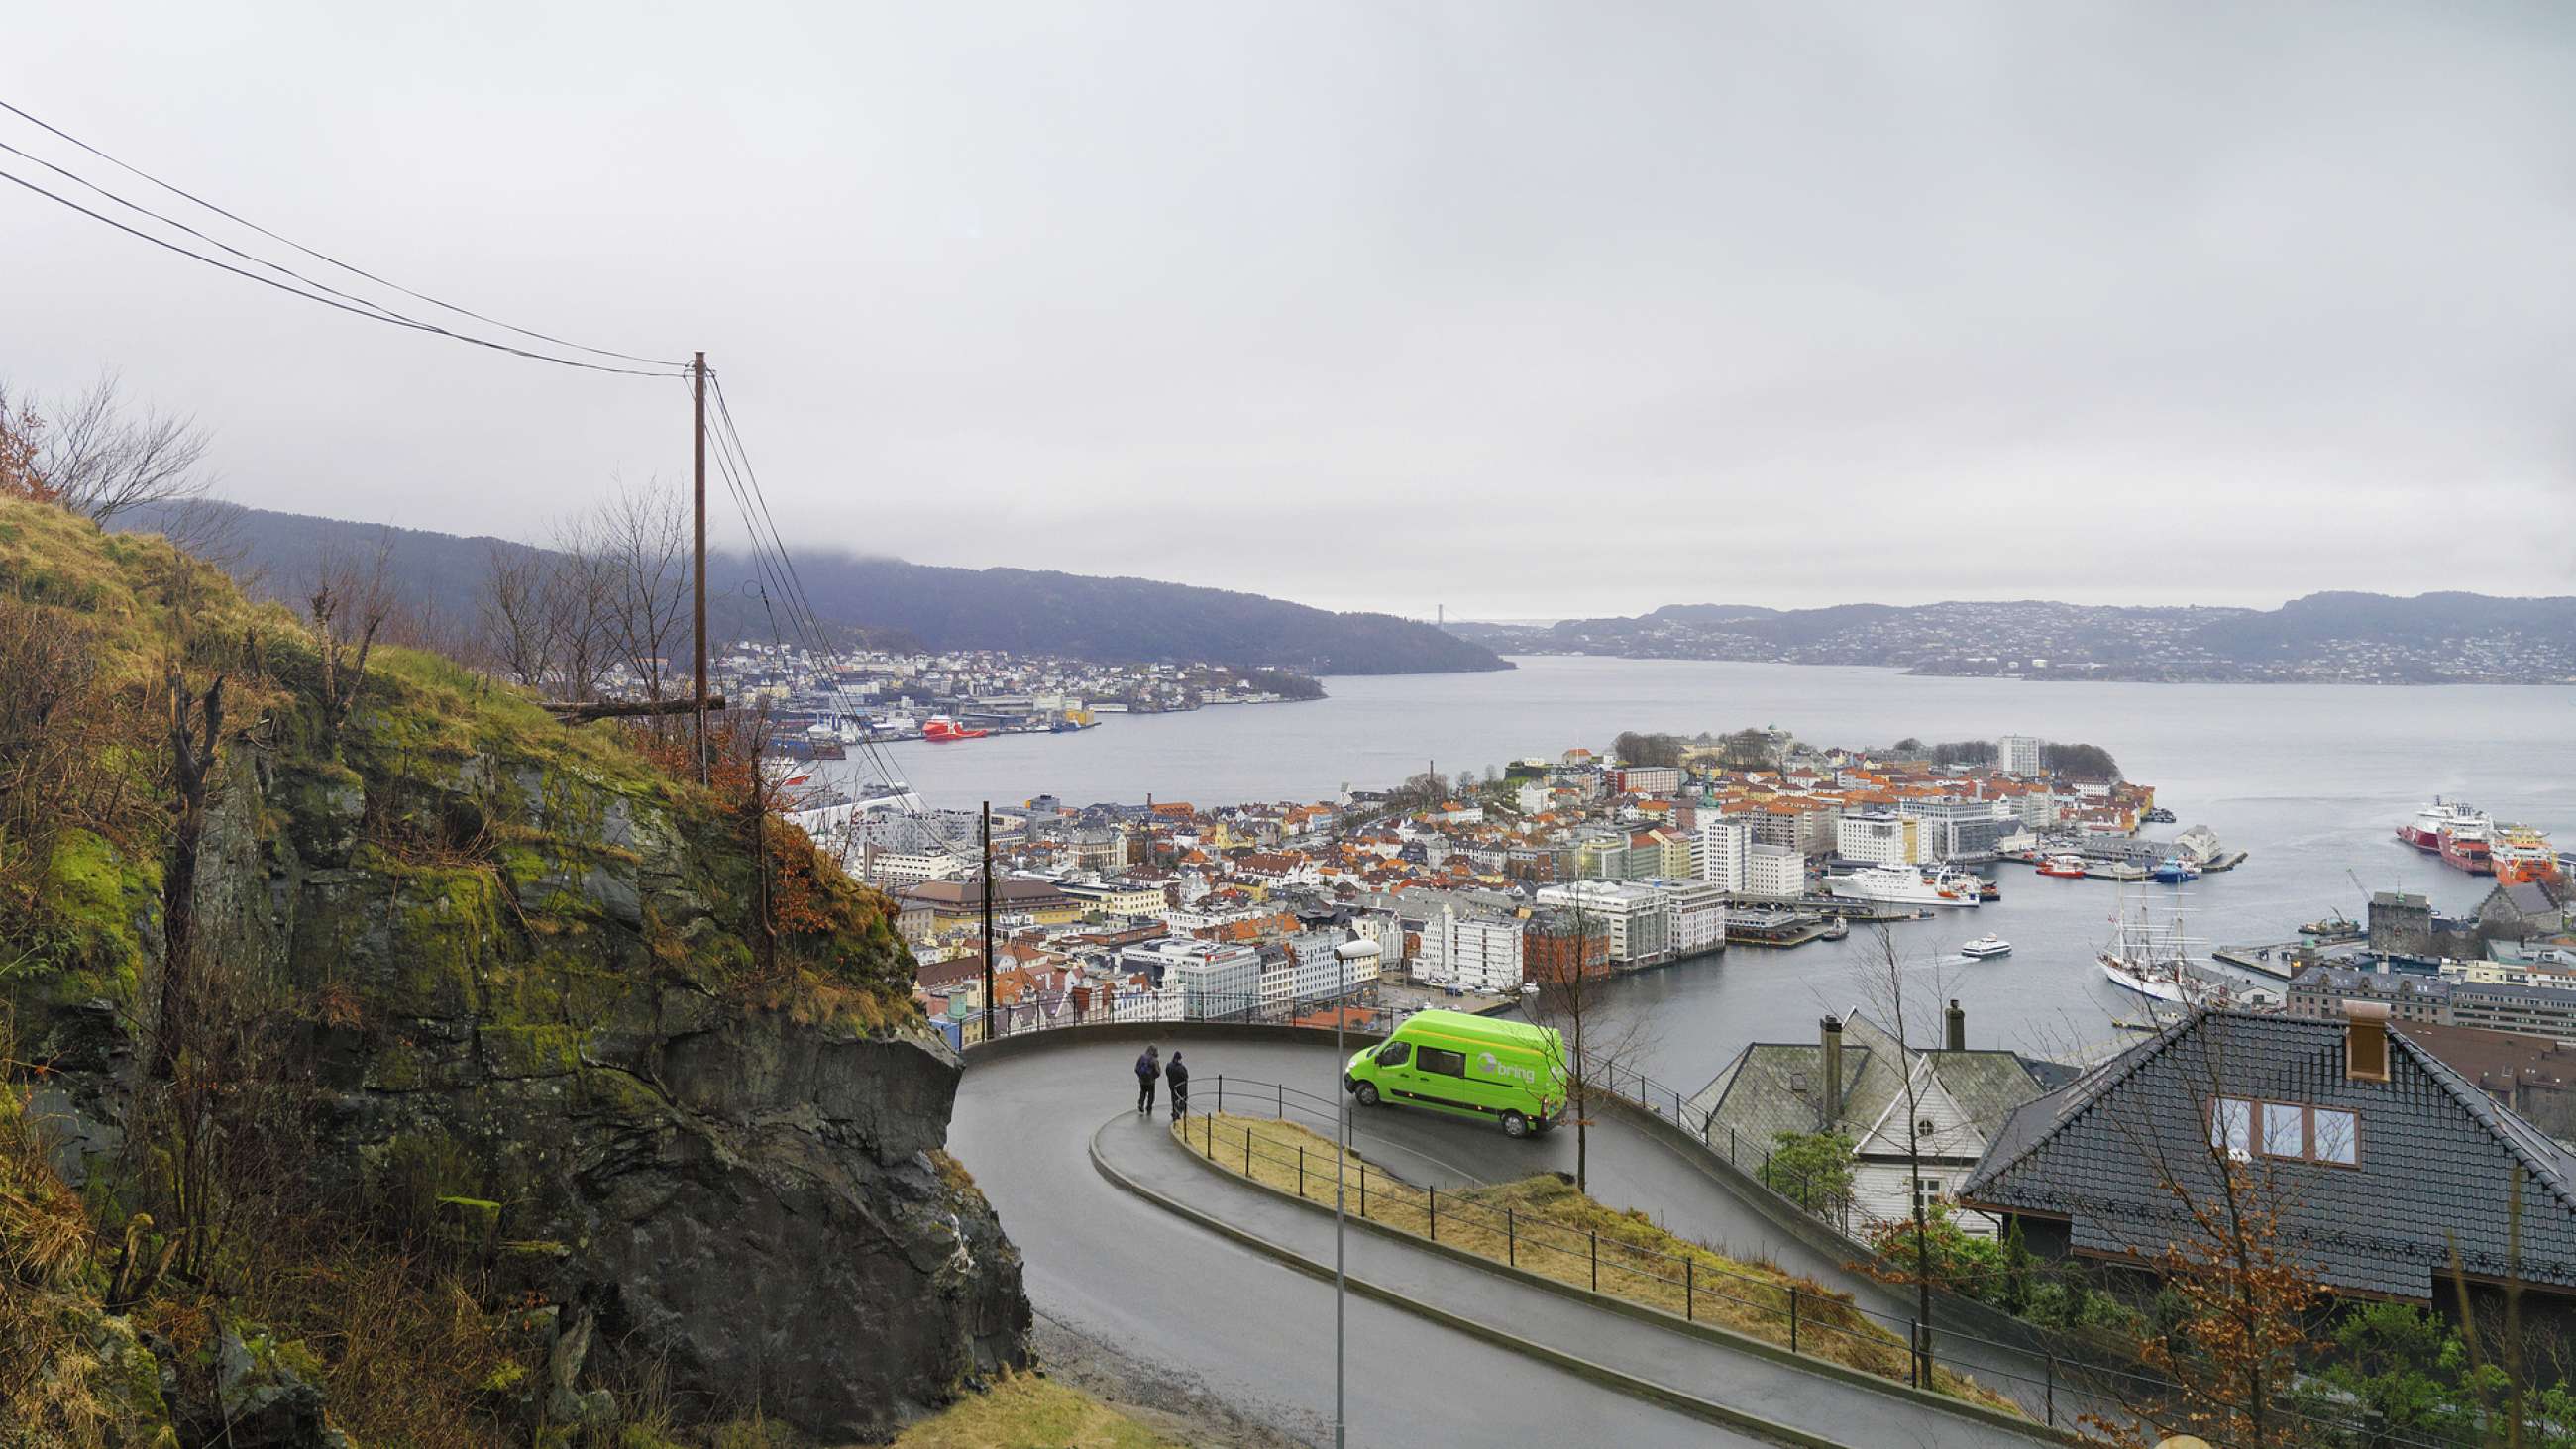 En Bring-bil på vei opp en bakke med utsikt over en by og fjord i bakgrunnen